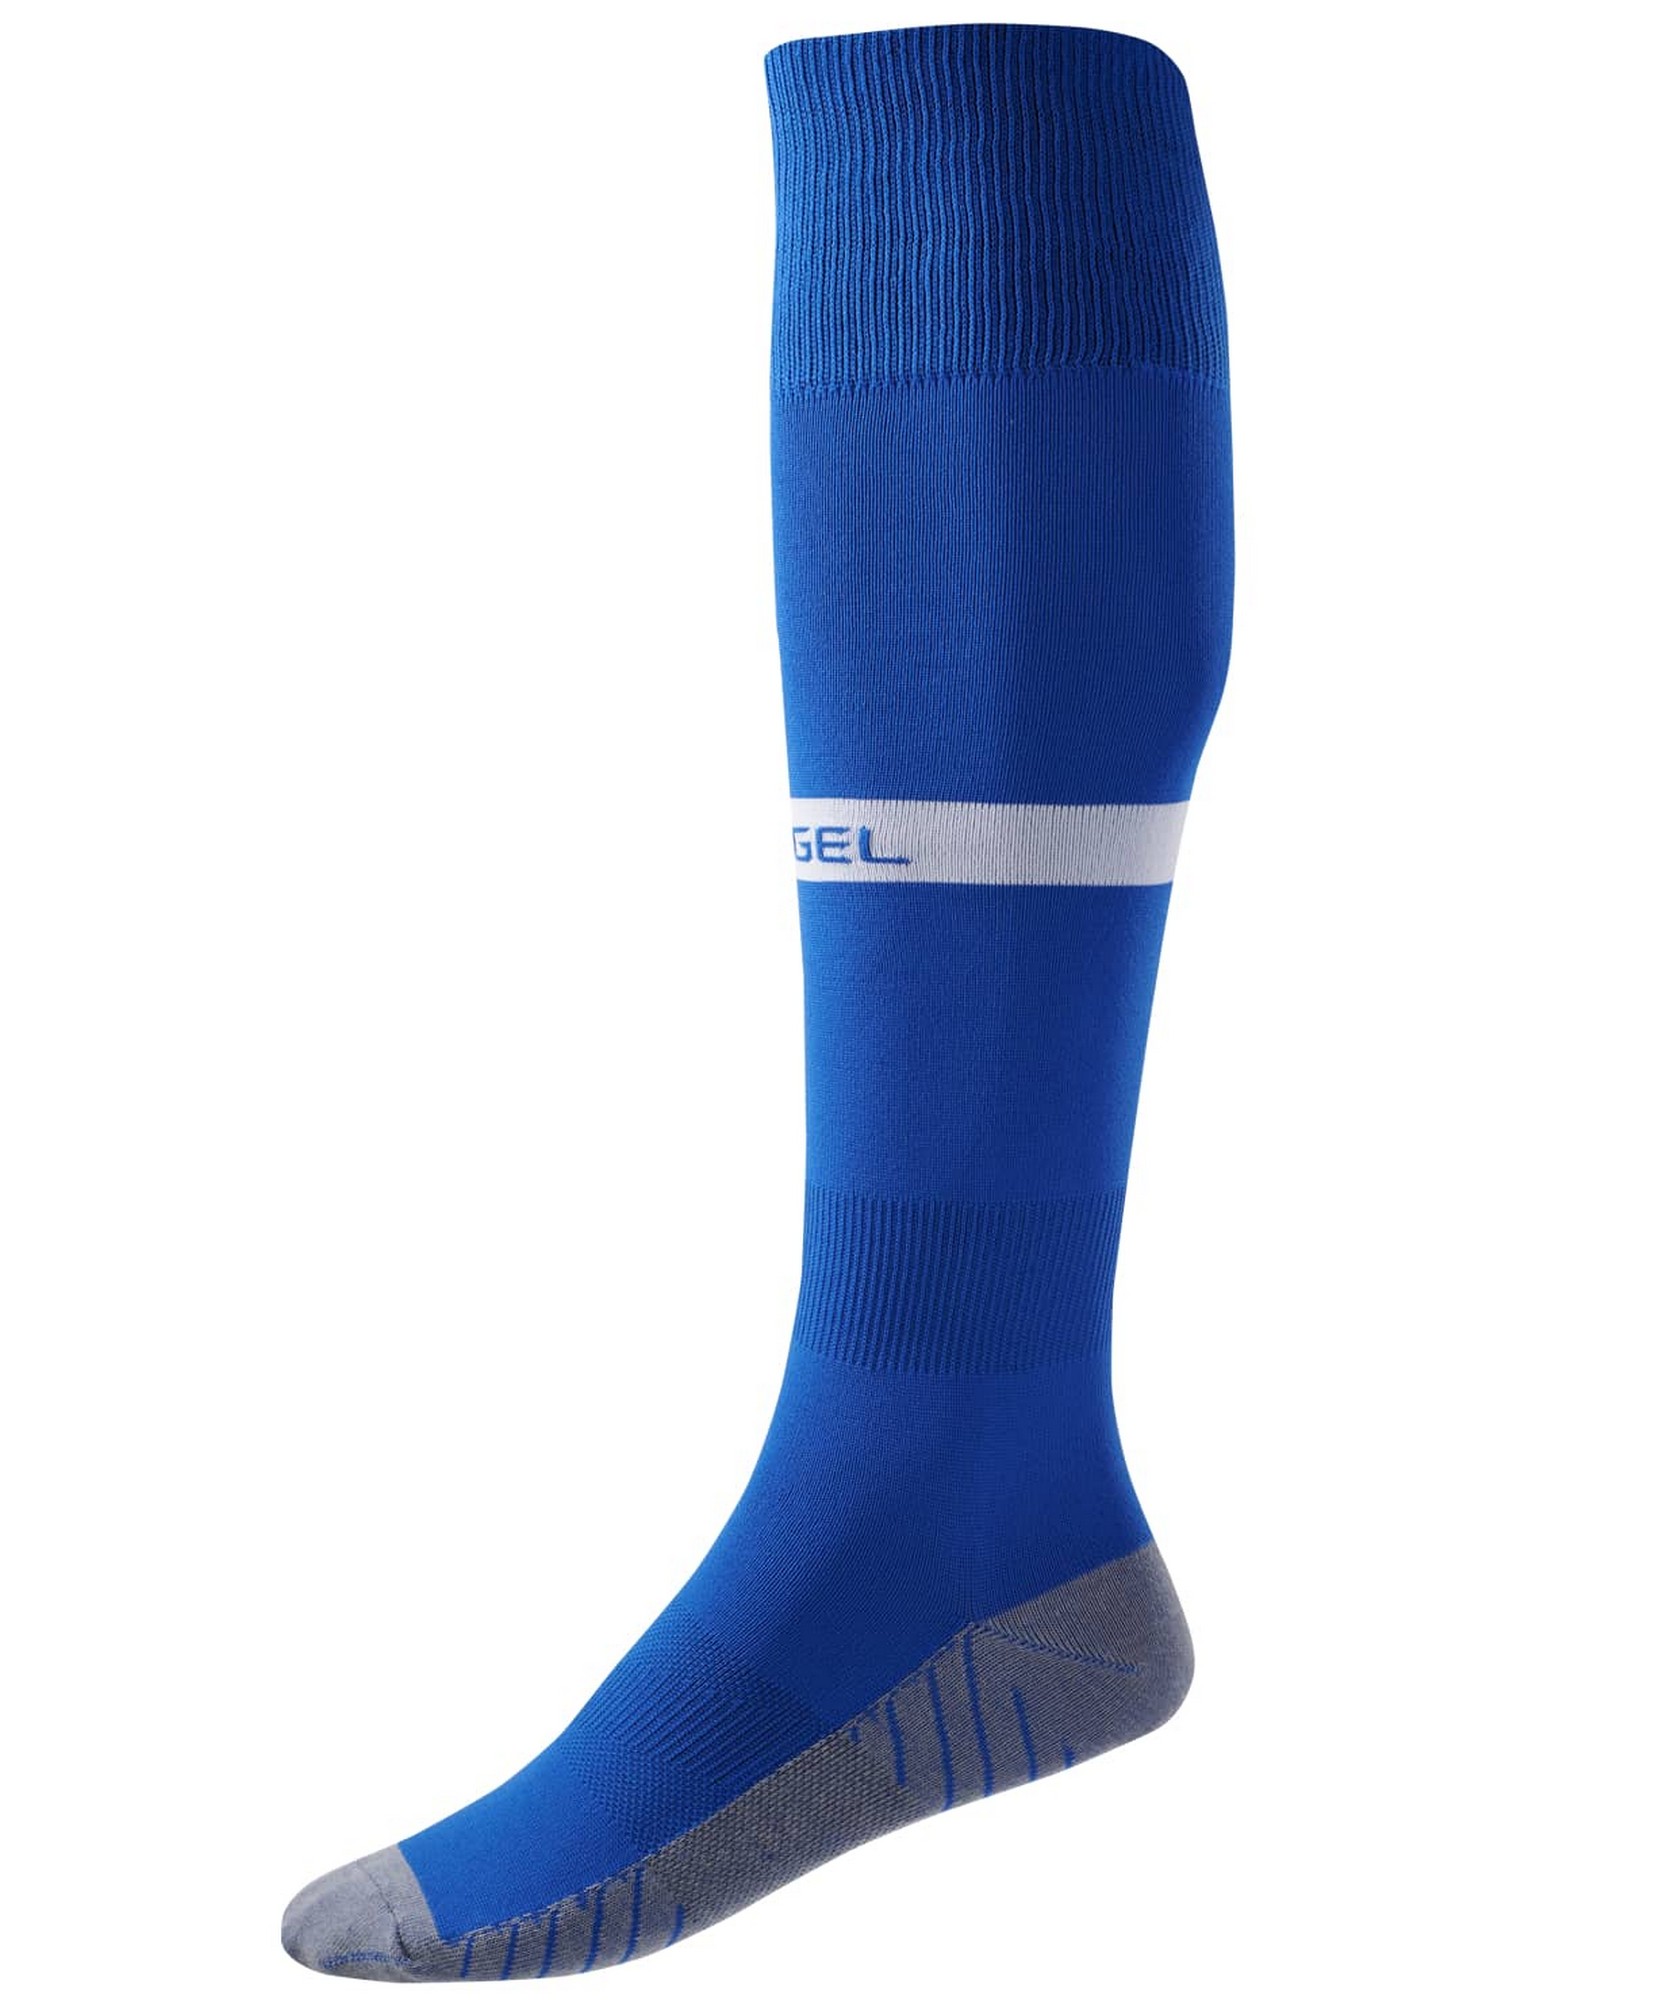 Купить Гетры футбольные Jögel Camp Advanced Socks, синийбелый,